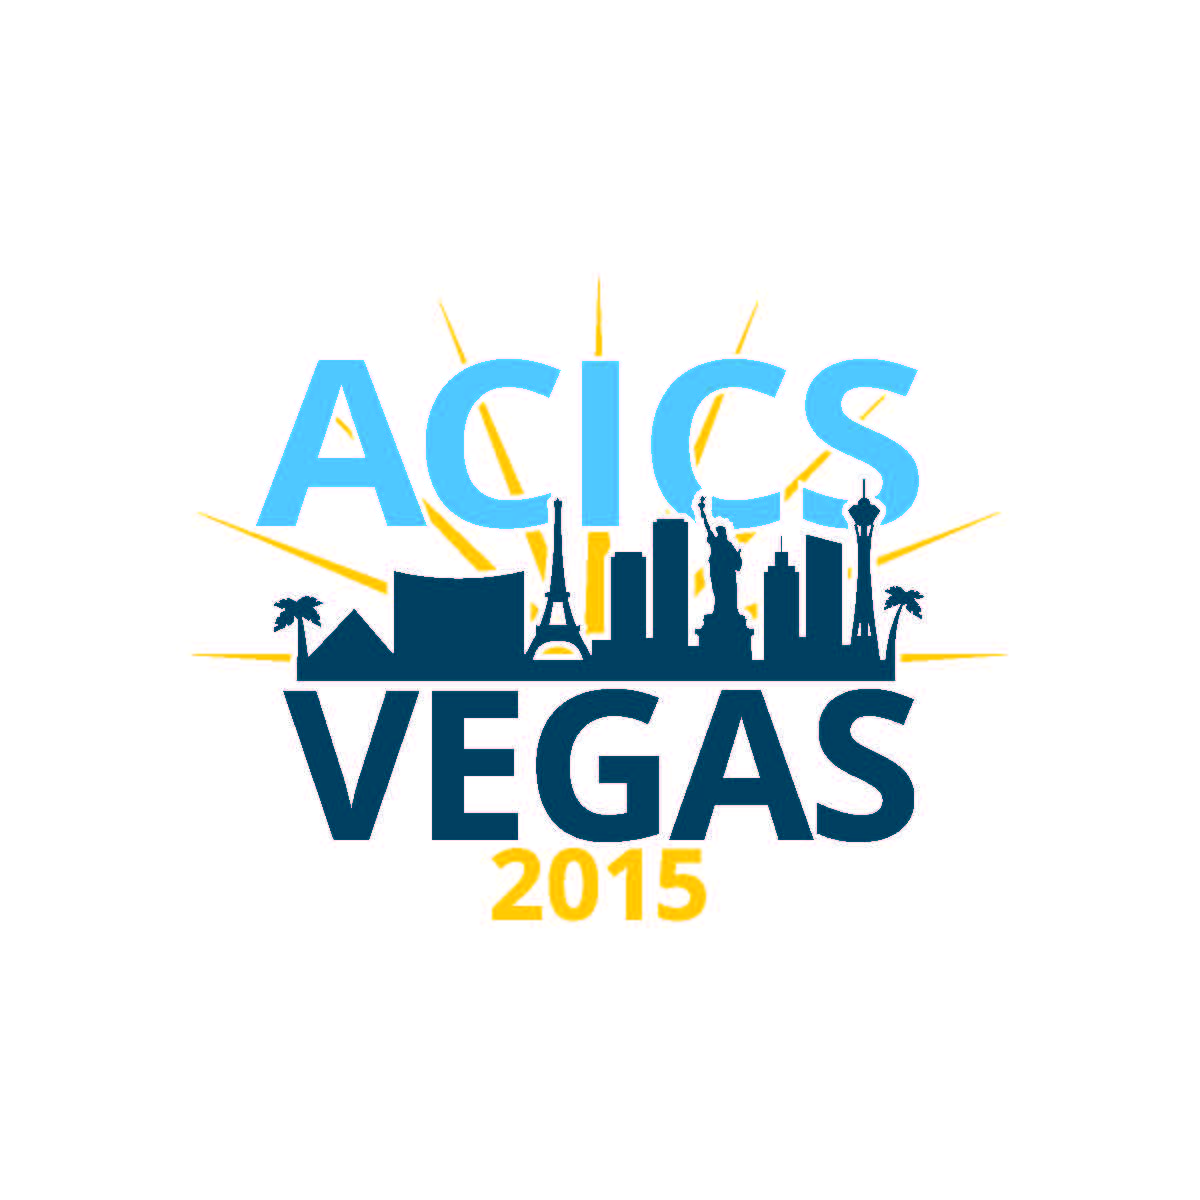 Acics Logo - ACICS. Save the Date 2015